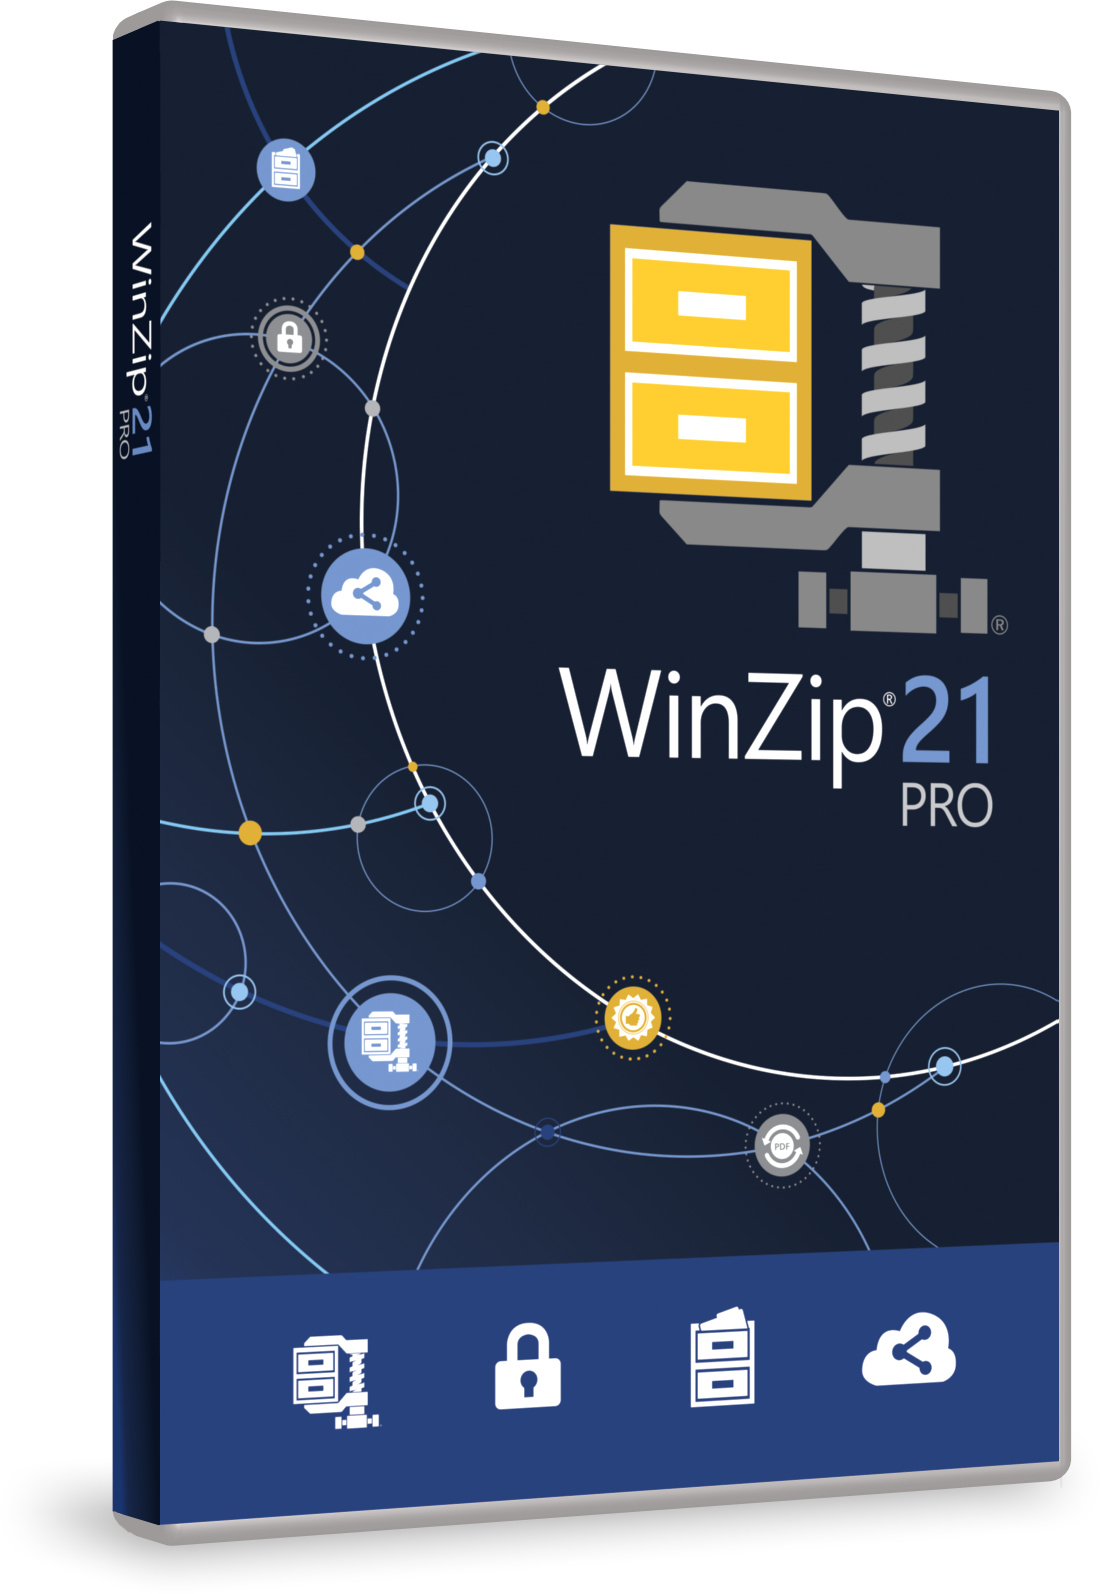 WinZip 21 Proのパッケージ